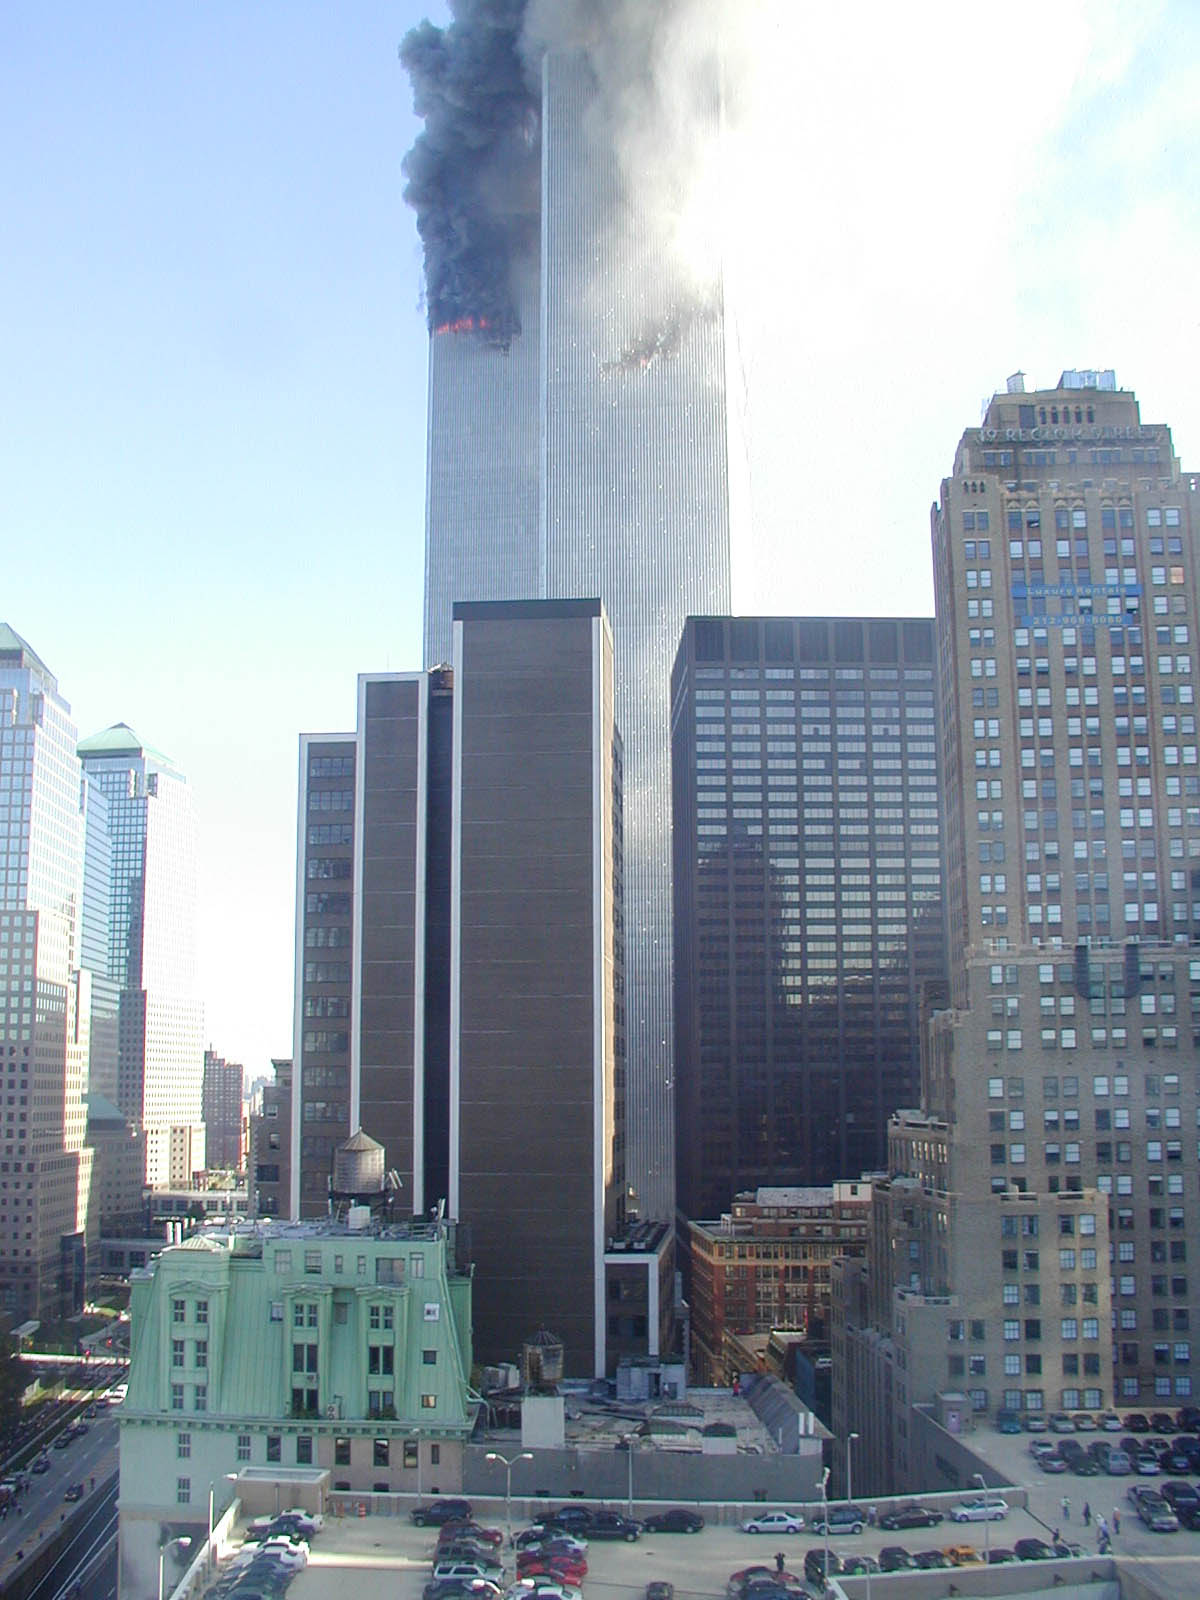 Сколько этажей было в башнях близнецах. Башни ВТЦ В Нью-Йорке. Нью-Йорк Всемирный торговый центр 1999. ВТЦ Нью-Йорк башни Близнецы. Здания ВТЦ 3 В Нью Йорке башни Близнецы.